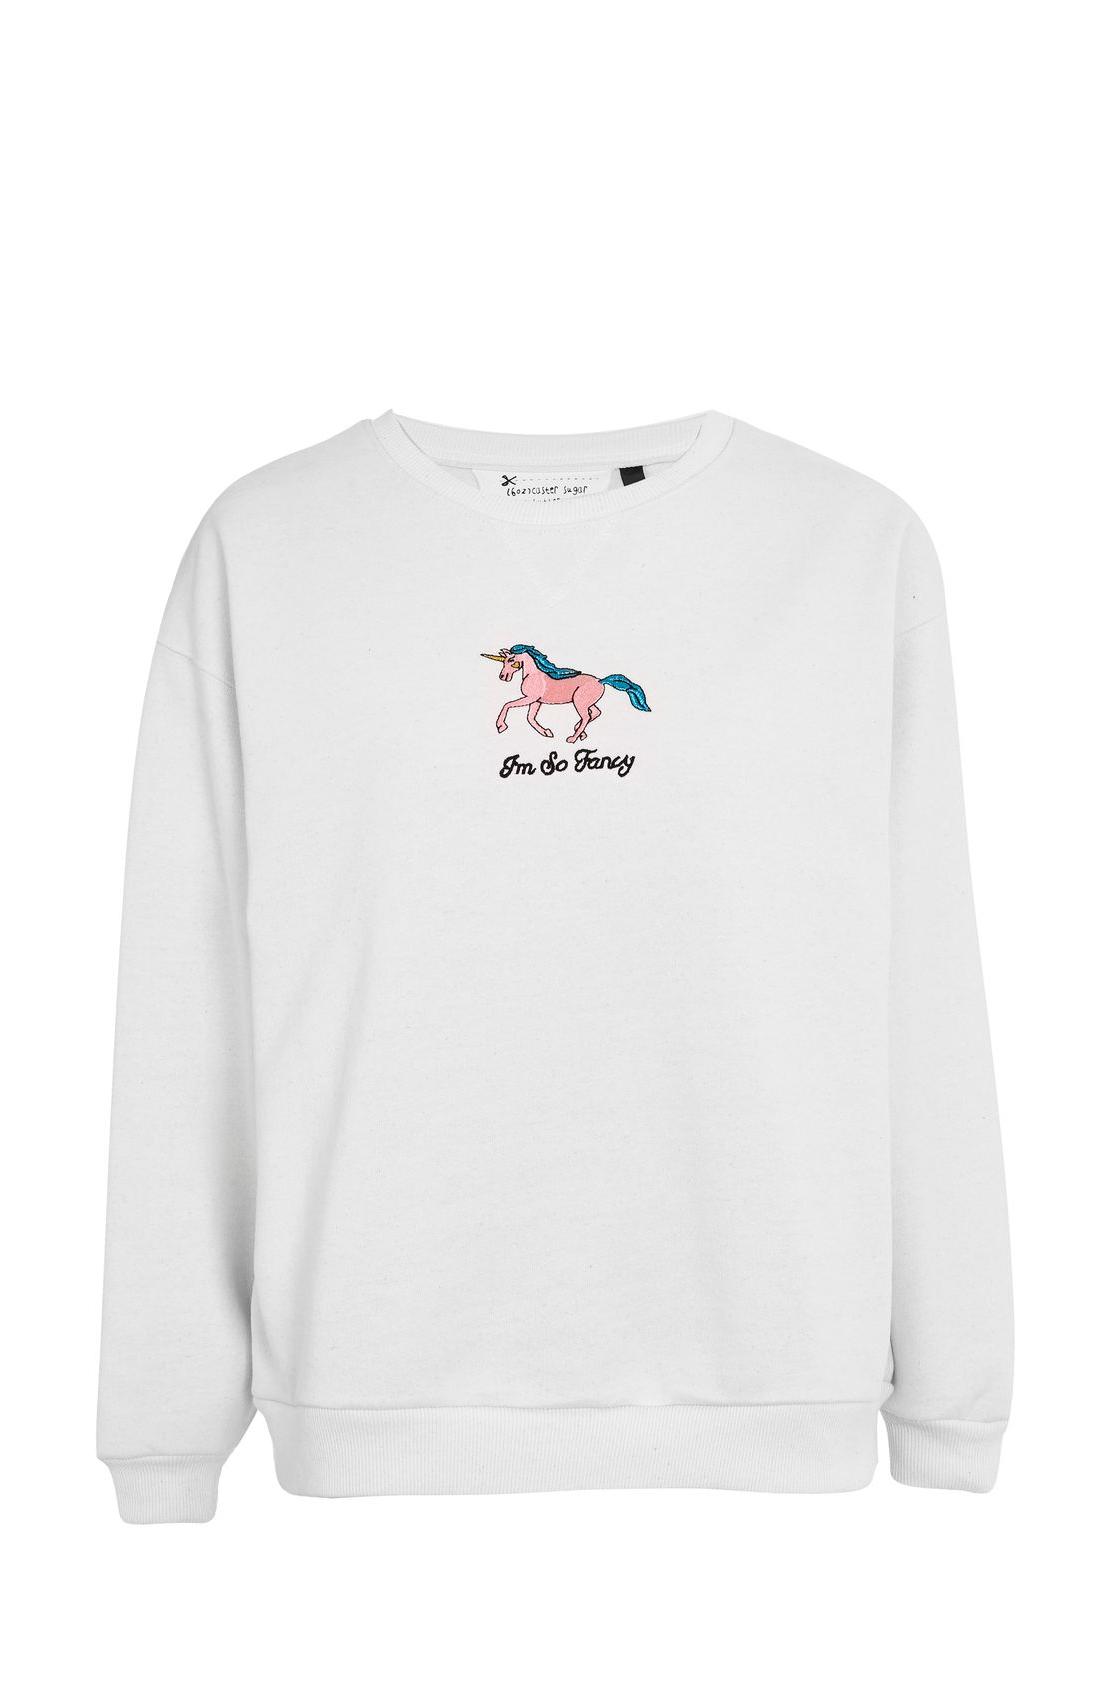 Sweatshirt Unicorn, Topshop, €44